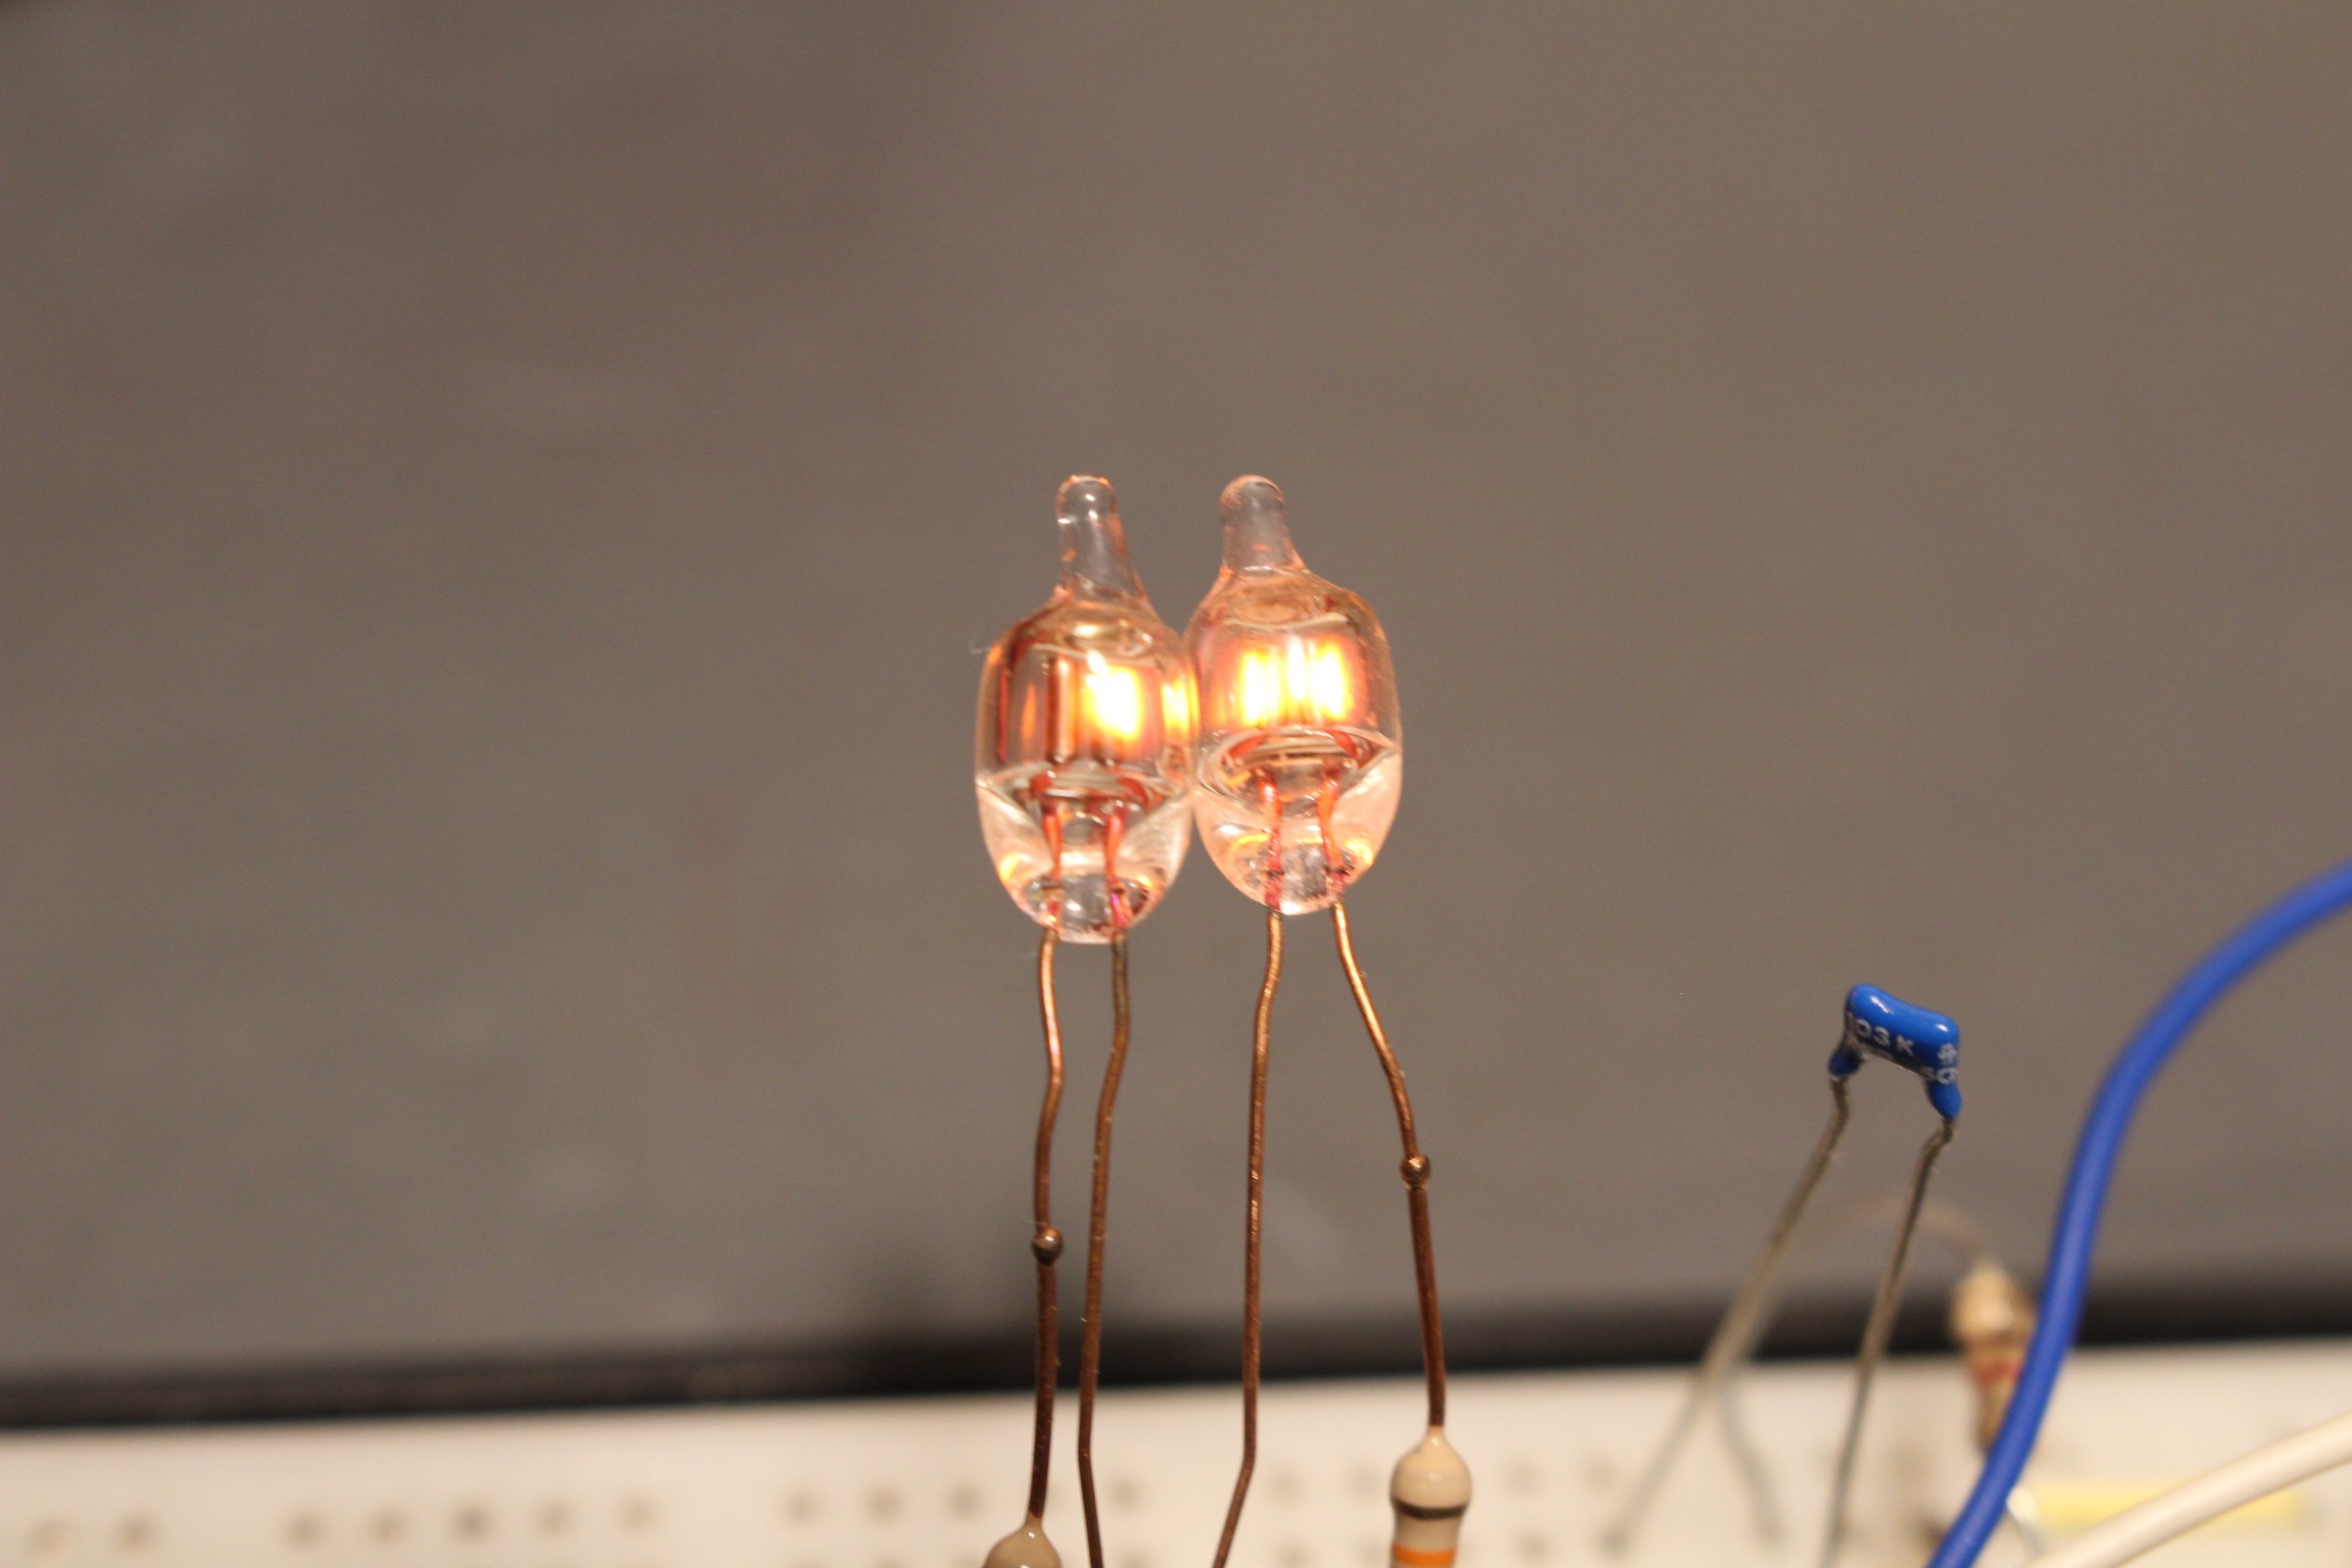 4 bits op 2 neonlampjes, of “hoe beide elektroden van een neonlampje te gebruiken”